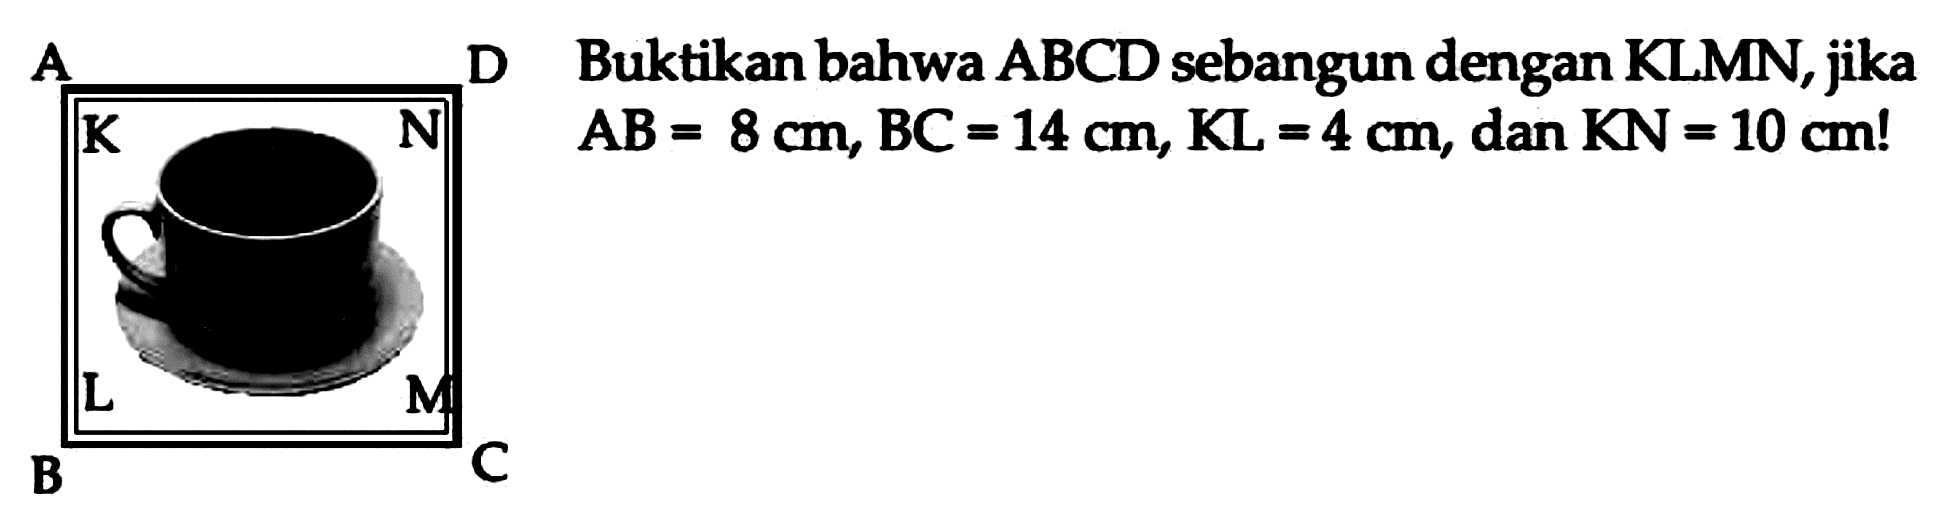 Buktikan bahwa  (ABCD)  sebangun dengan KLMN, jika  A B=8 cm, B C=14 cm, K L=4 cm , dan  K N=10 cm !